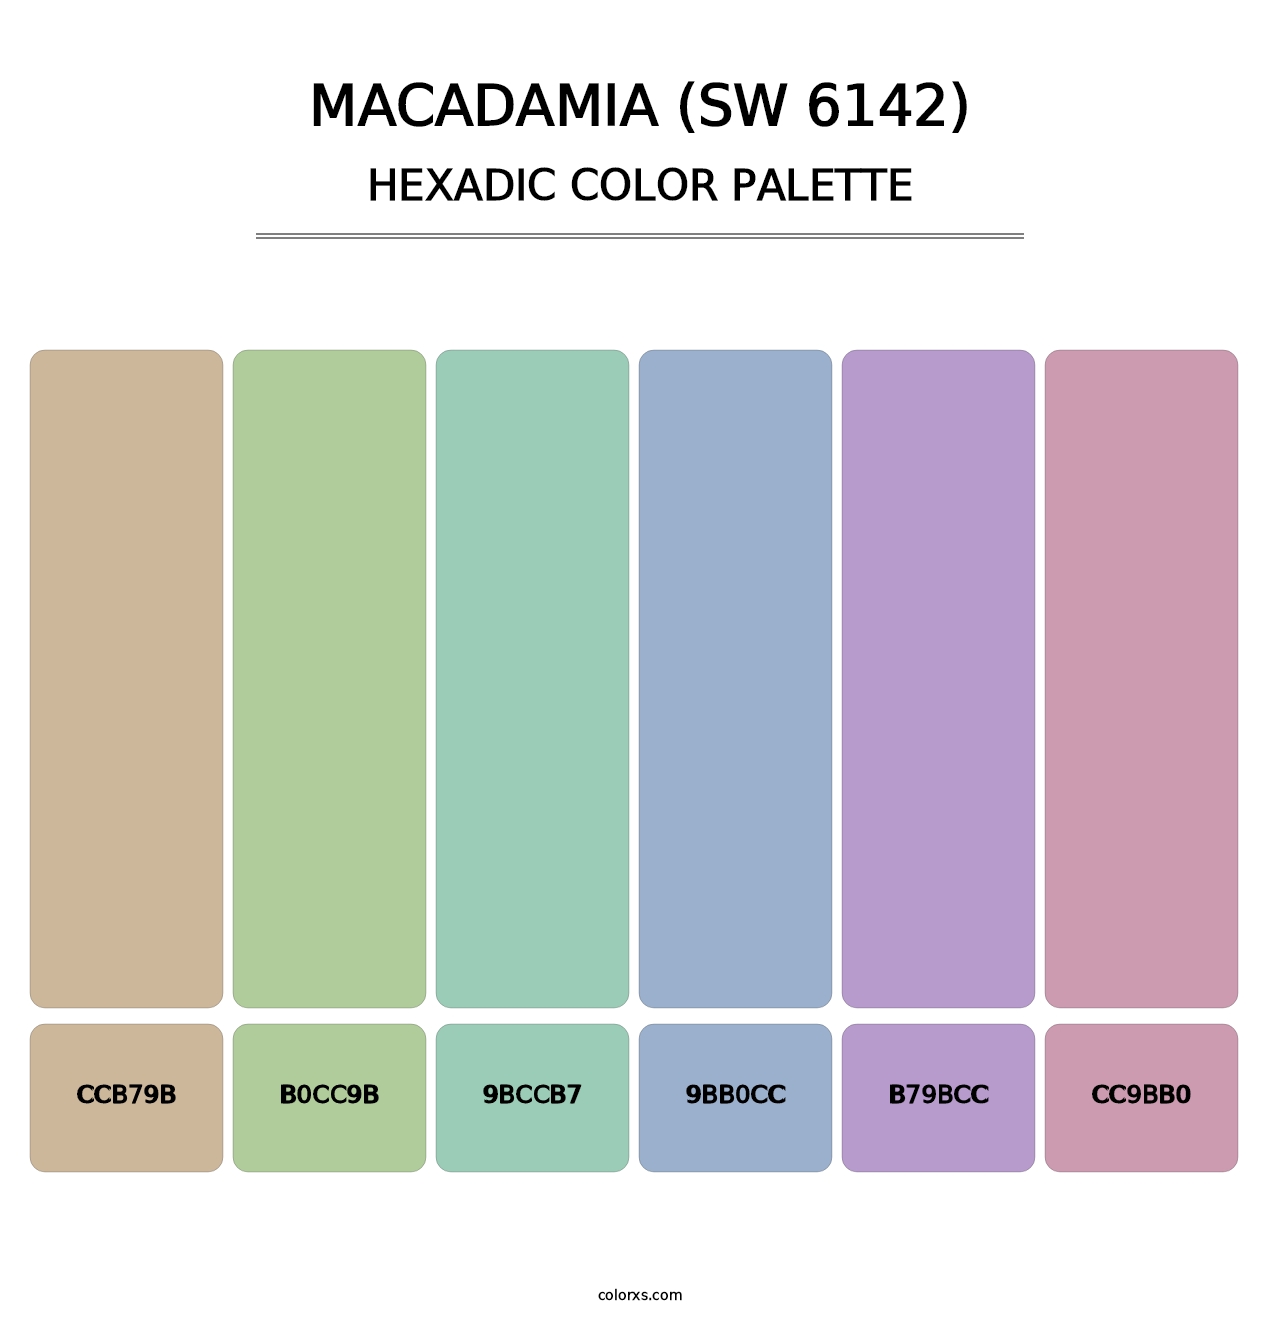 Macadamia (SW 6142) - Hexadic Color Palette